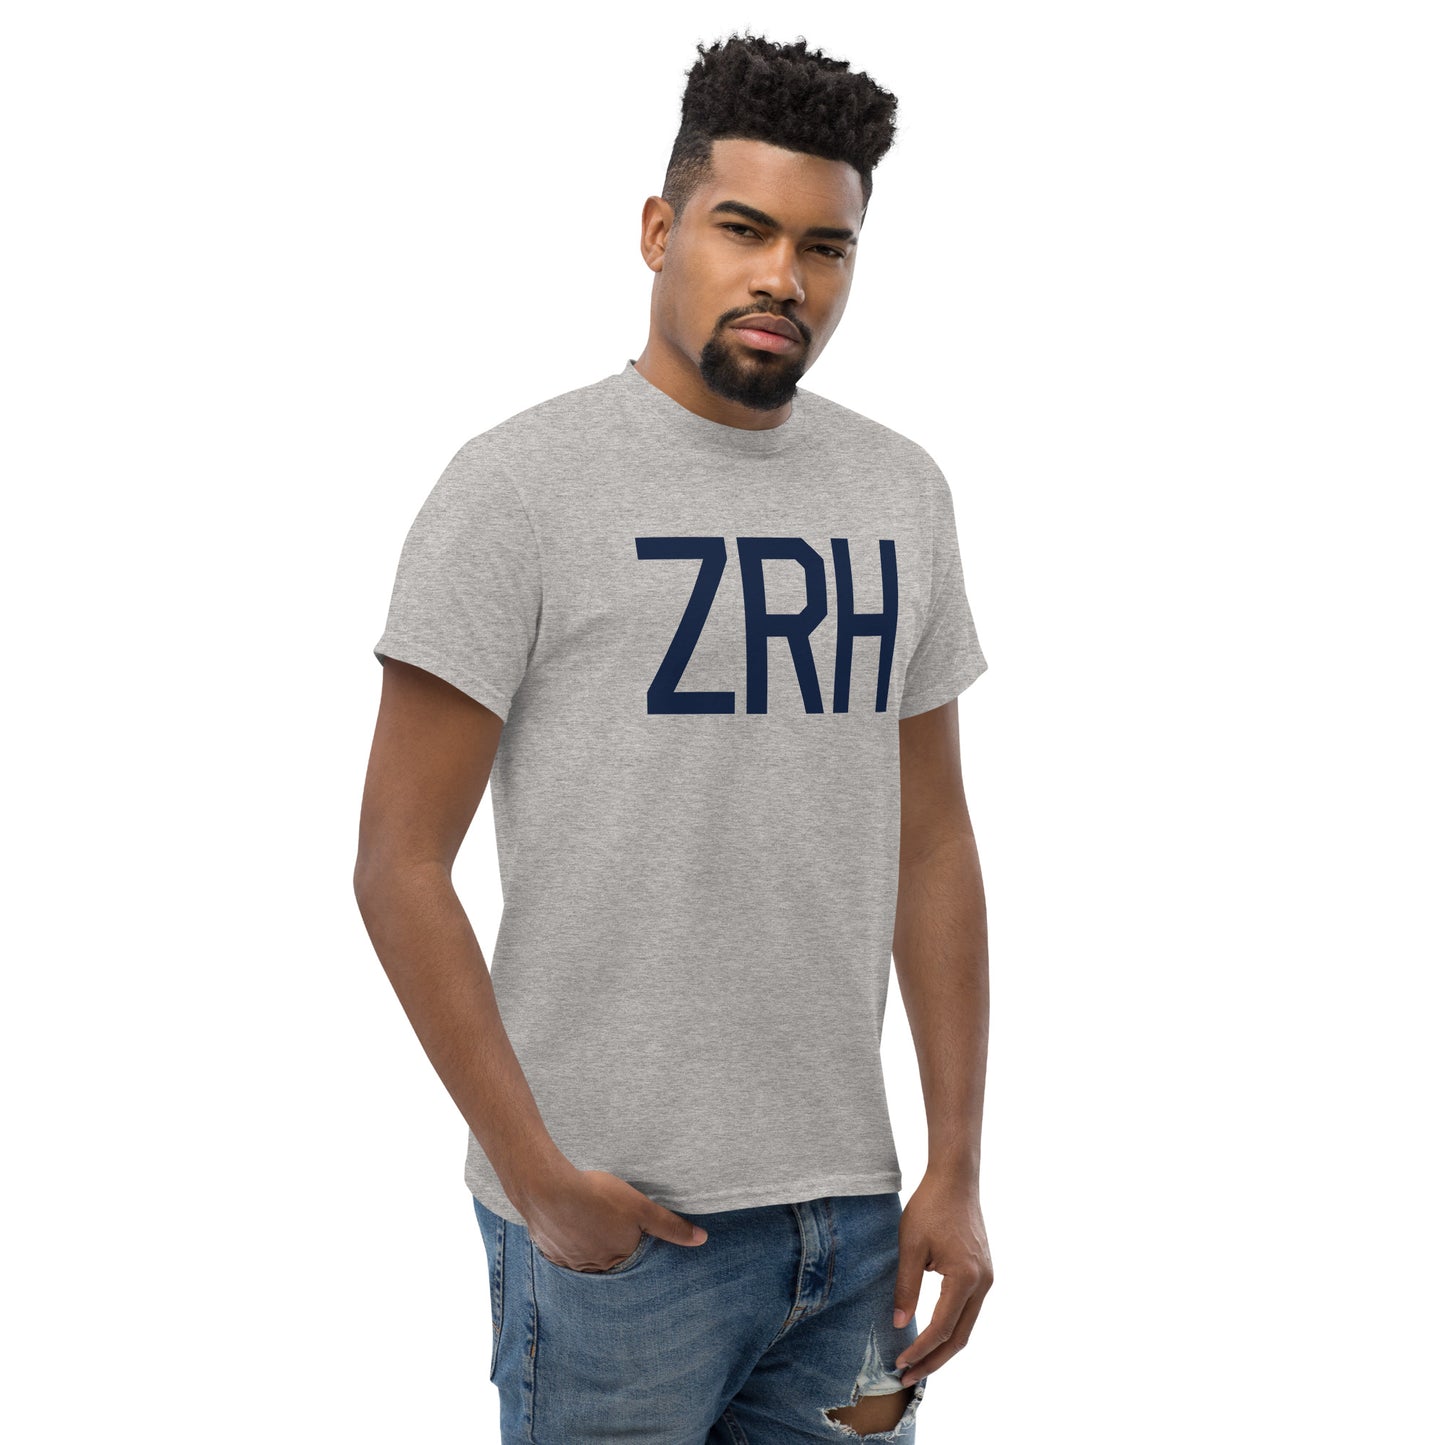 Aviation-Theme Men's T-Shirt - Navy Blue Graphic • ZRH Zurich • YHM Designs - Image 08